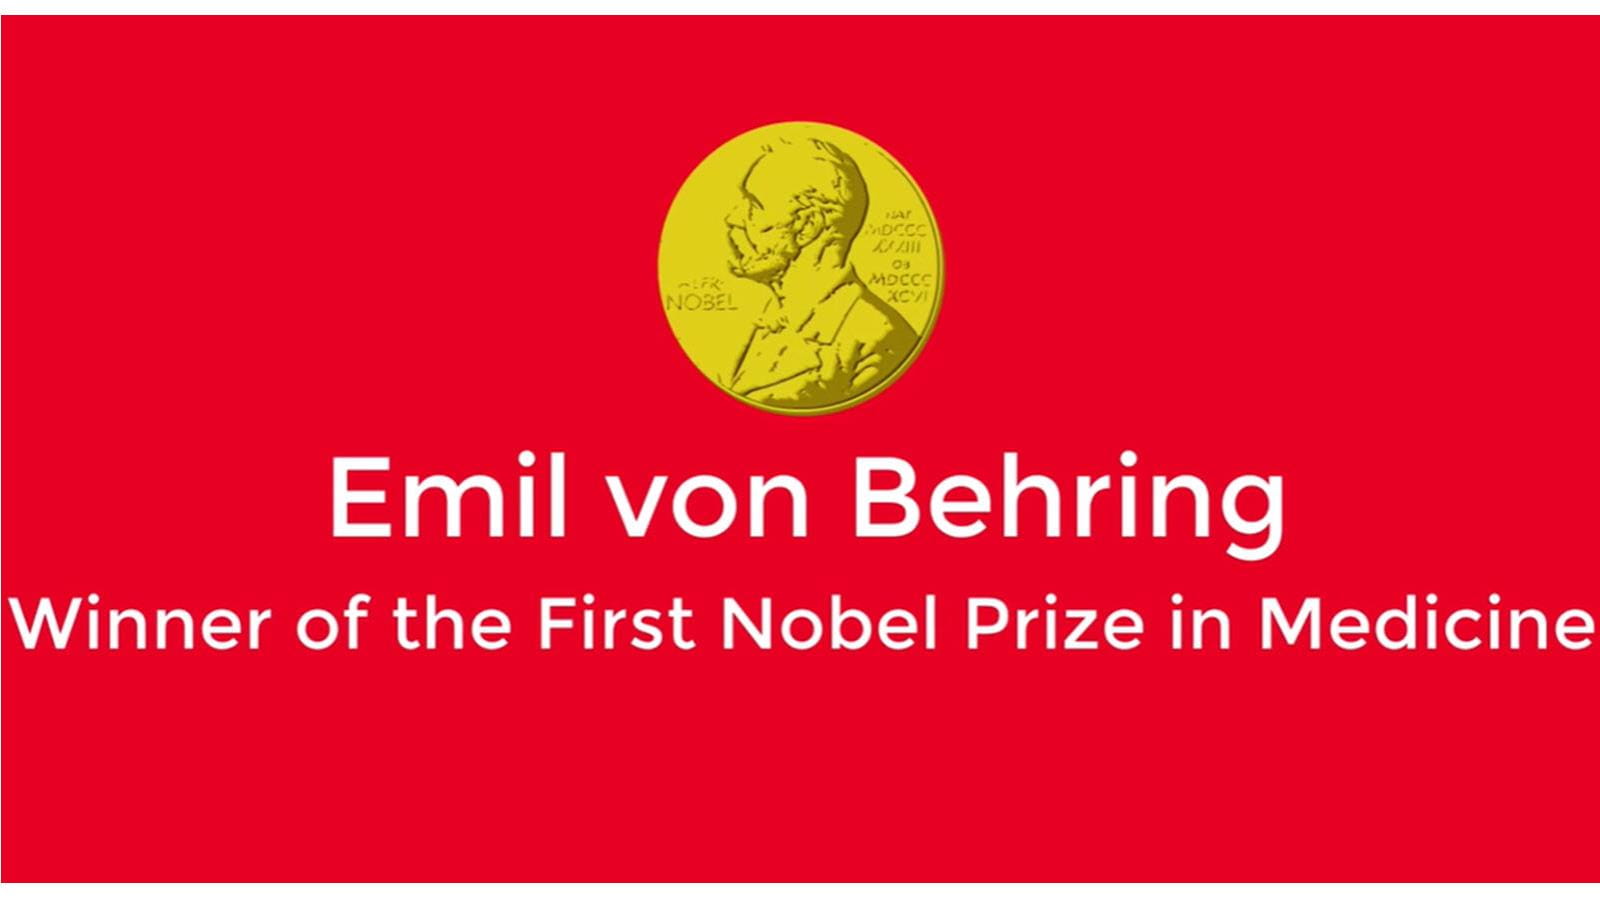 Gold Nobel medal on red background - Emil von Behring winner of the first Nobel Prize in medicine